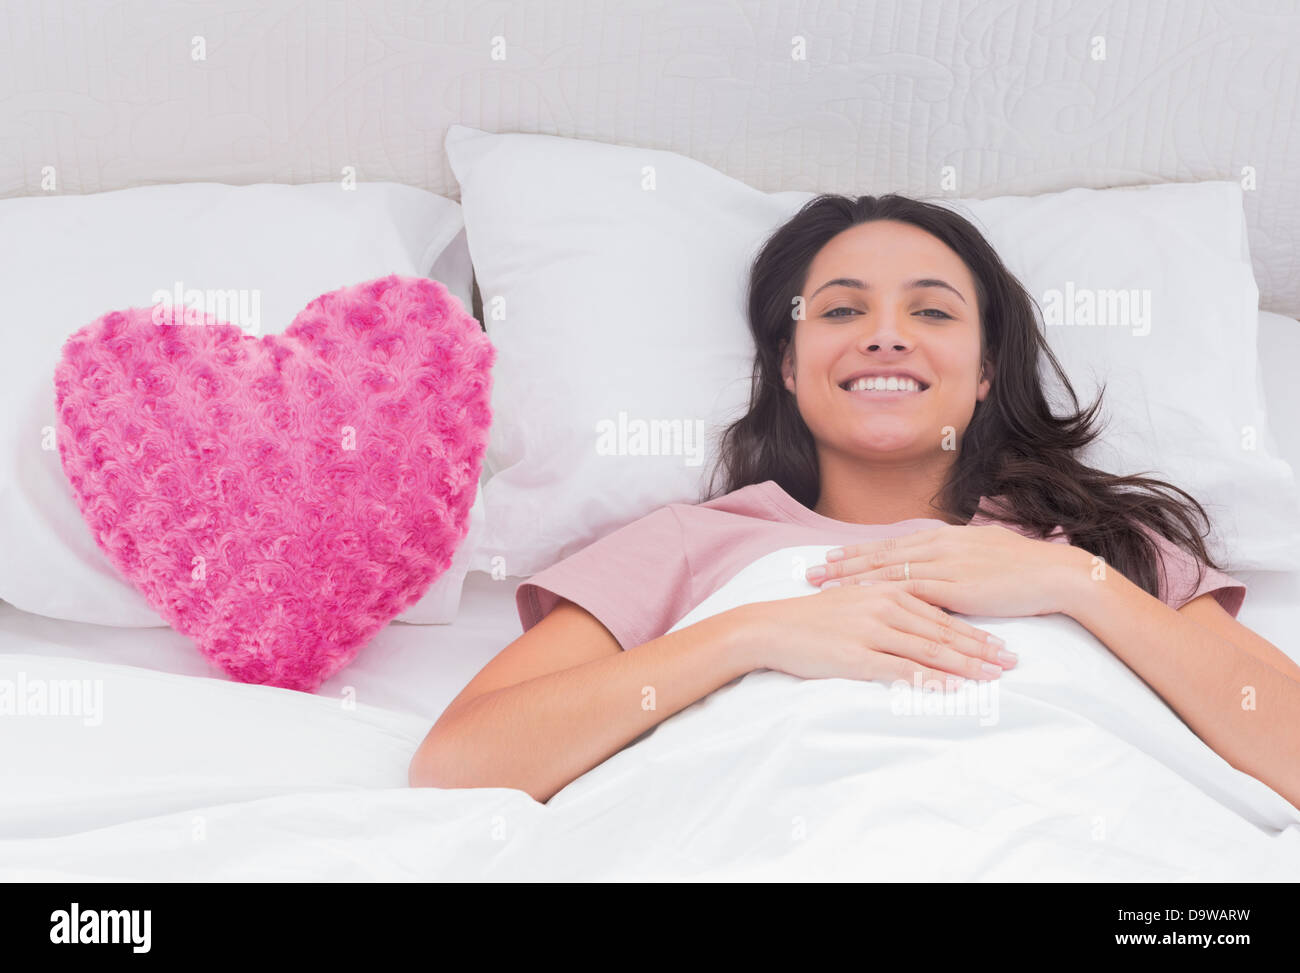 Frau liegt in ihrem Bett neben einem rosa Herz-Kissen Stockfoto